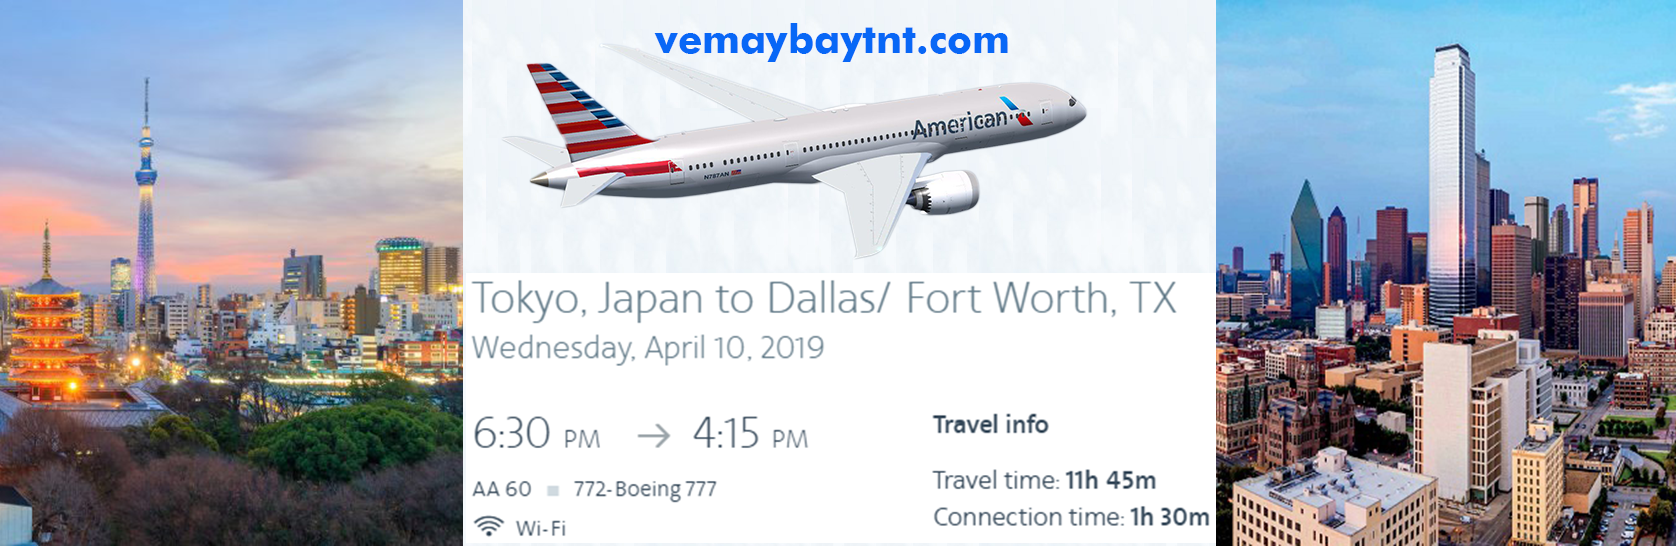 Tokyo_di_Dallas_American_Airlines